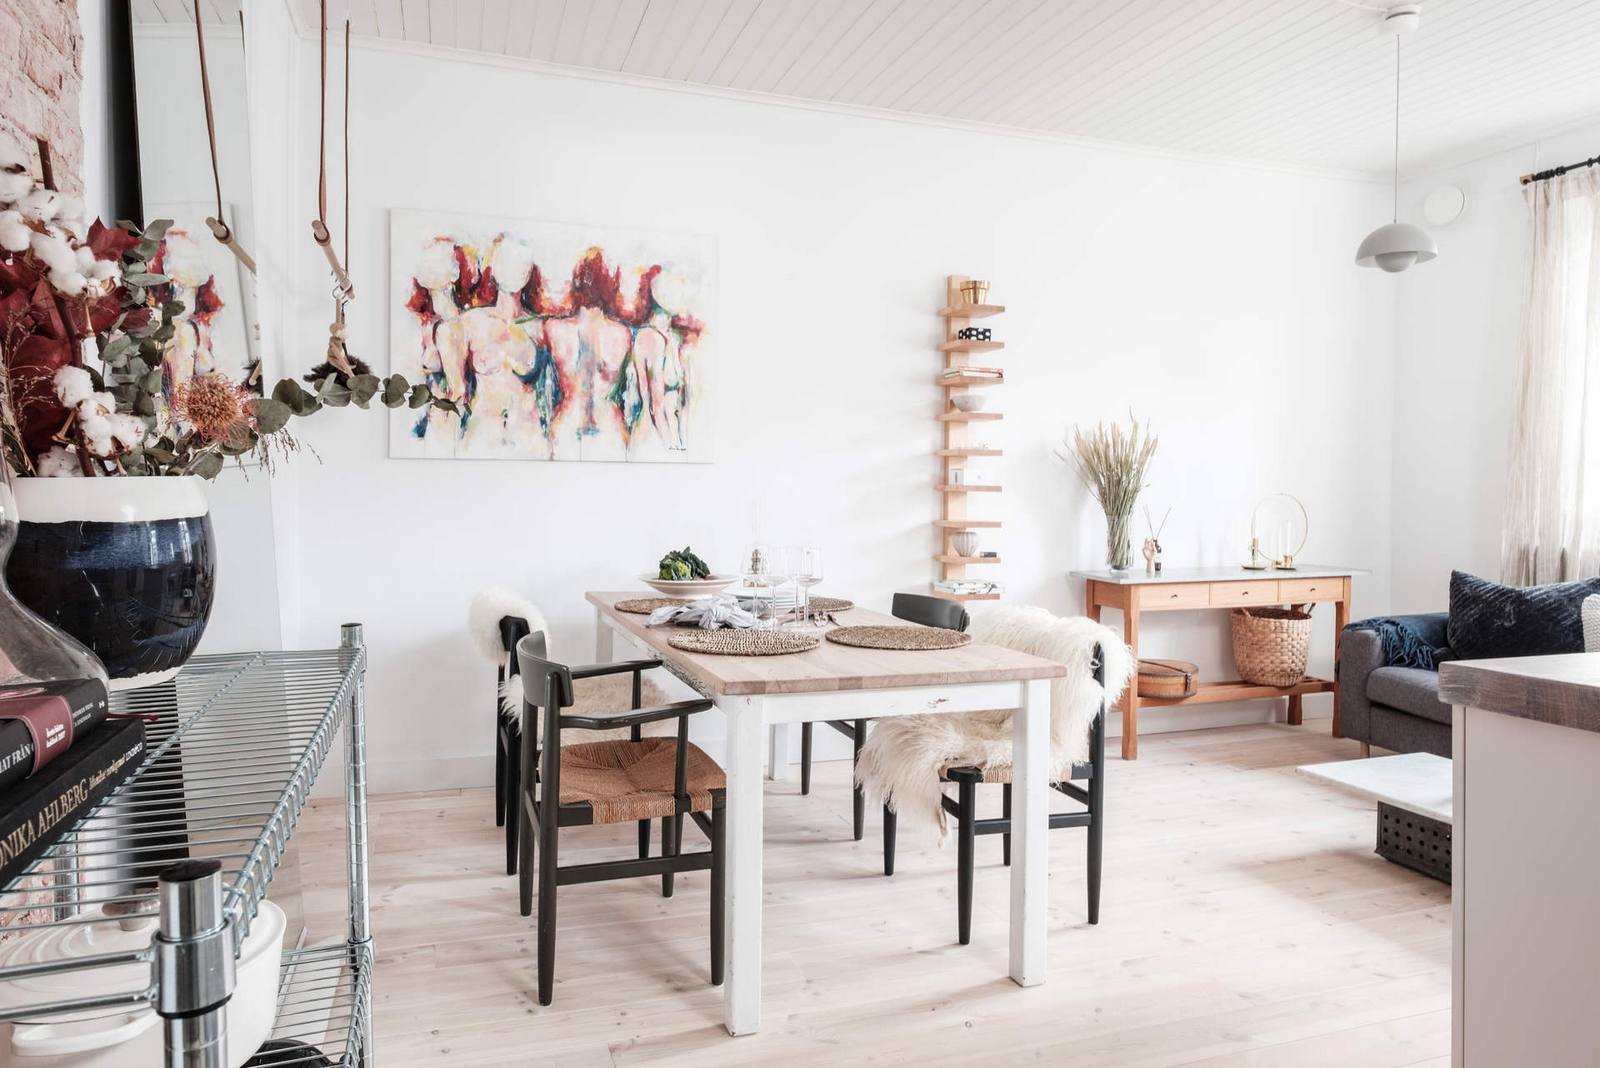 Khu vực ăn uống được bố trí đối diện phòng khách với chiếc bàn ăn ốp gỗ sáng màu, chân bàn sơn trắng tạo sự tương phản nhẹ nhàng với những chiếc ghế màu đen xung quanh nó.